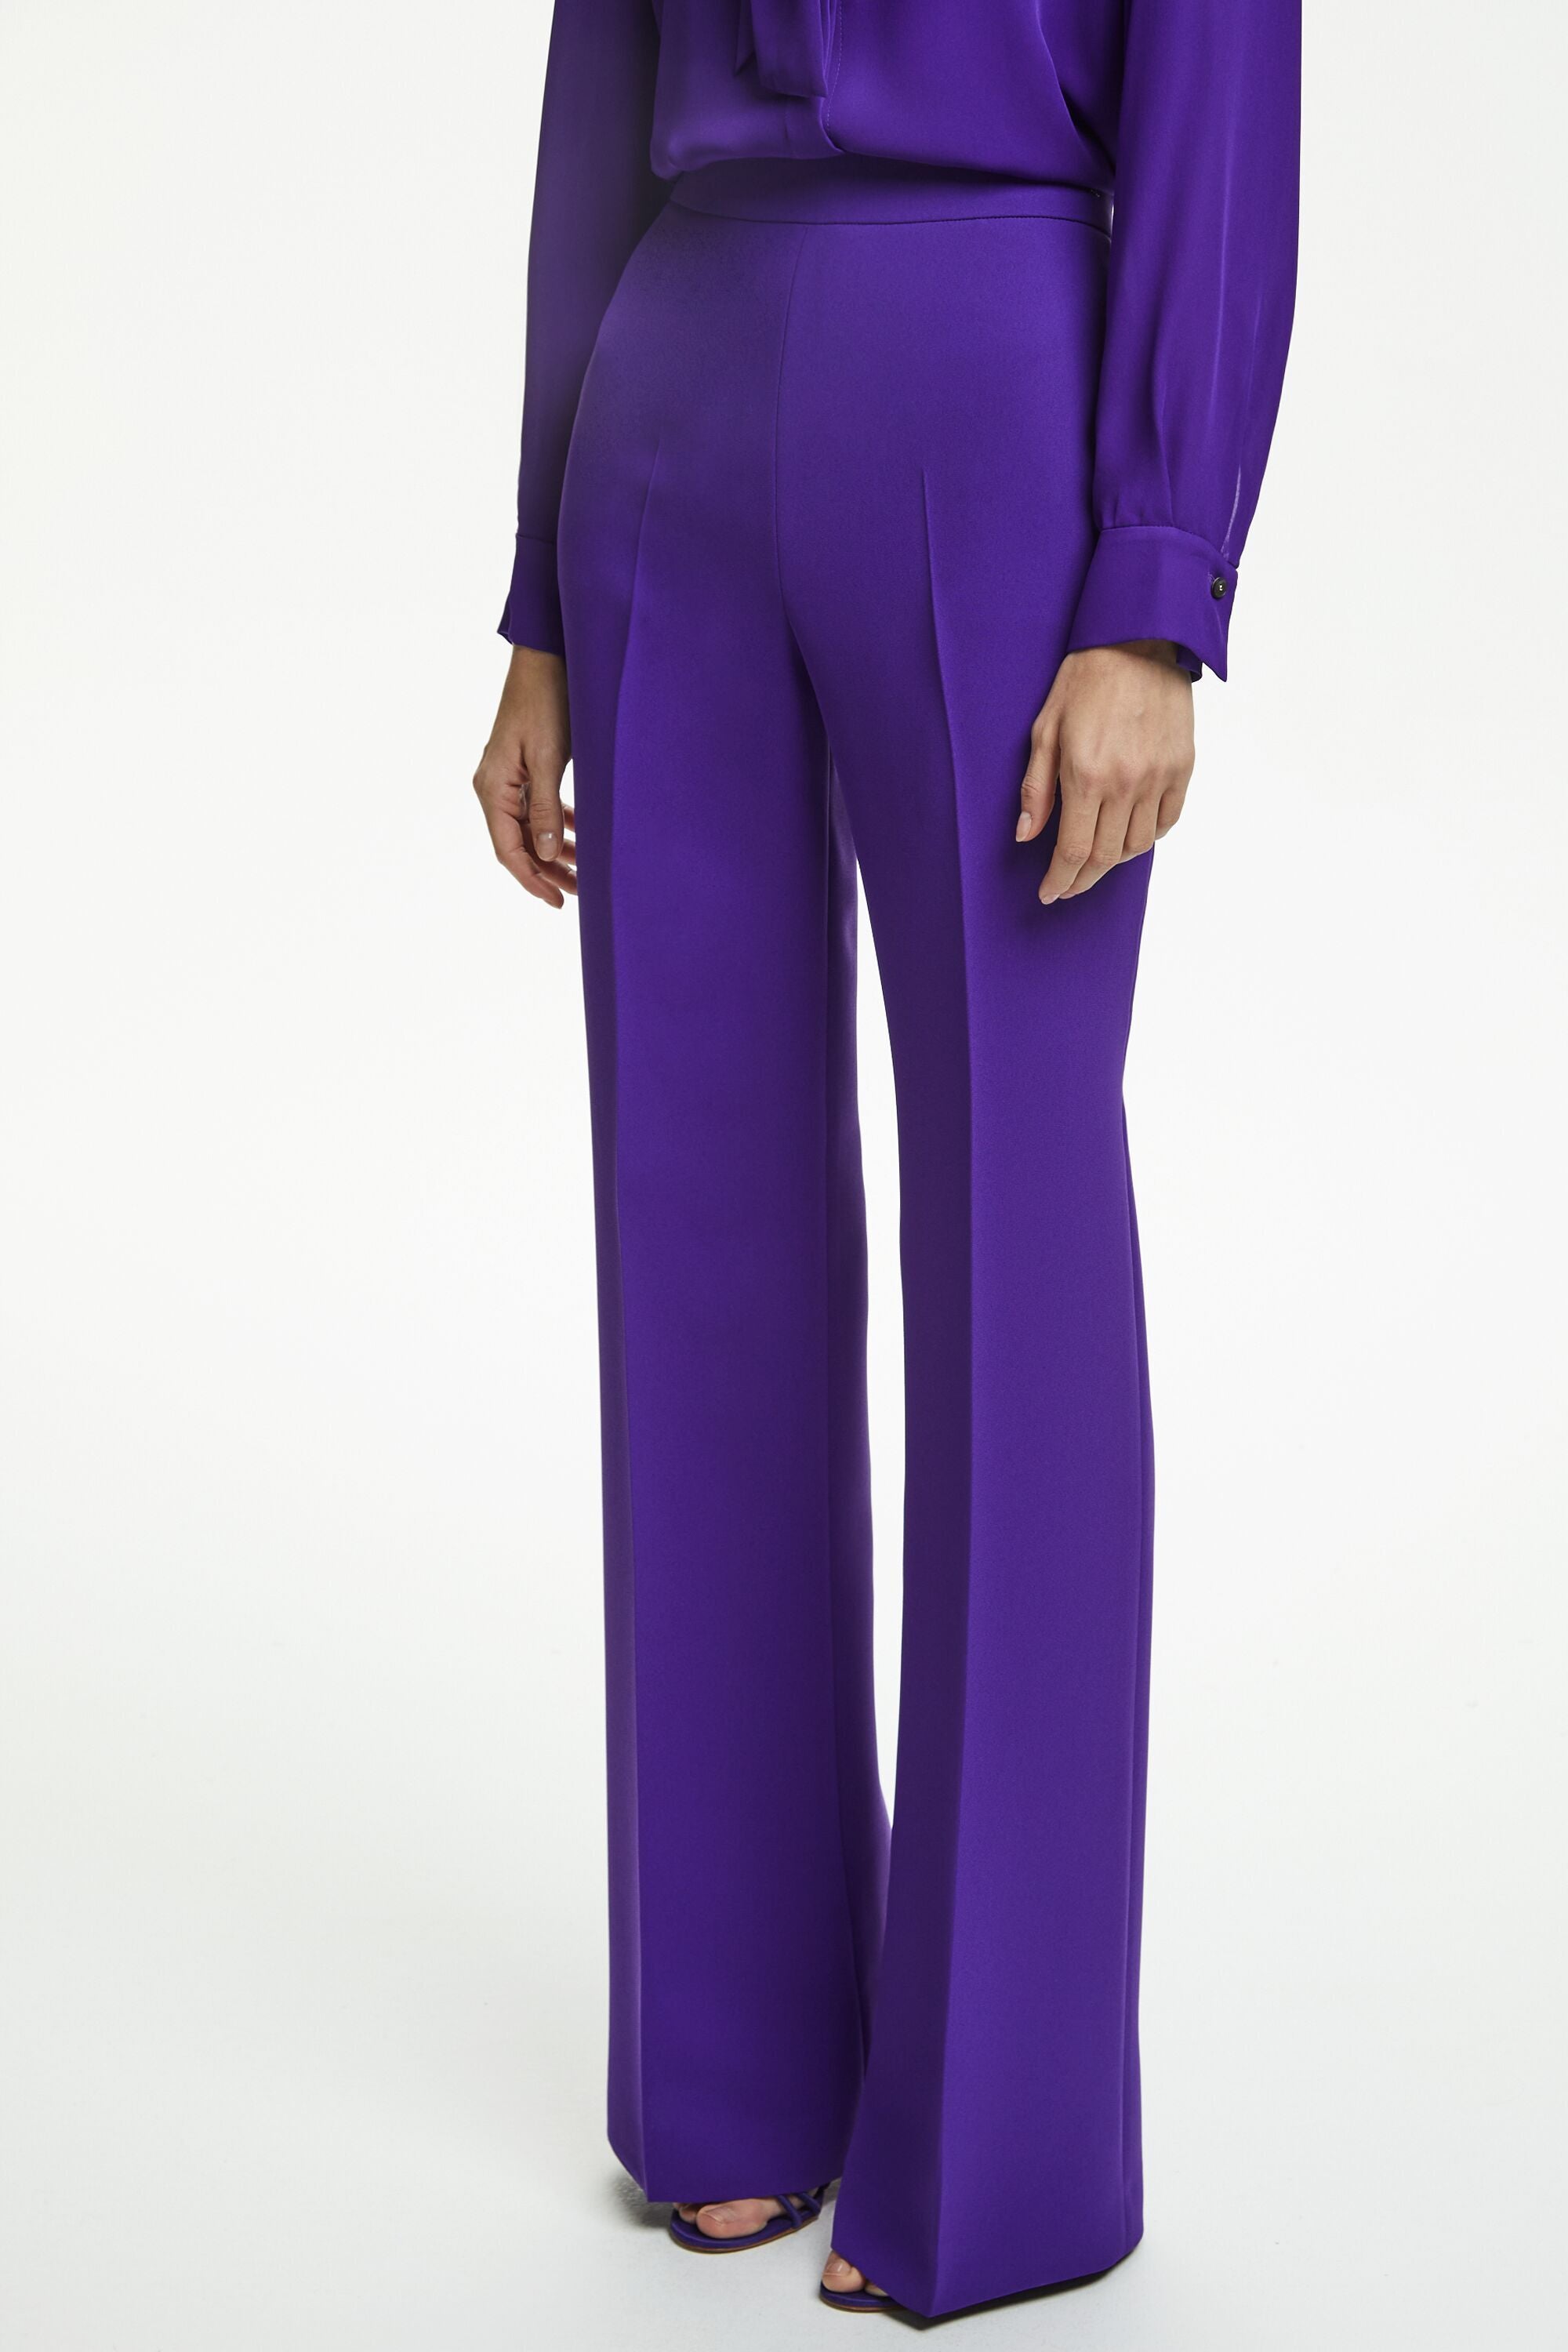 13,000円belper ベルパー grossy pleated pants purple